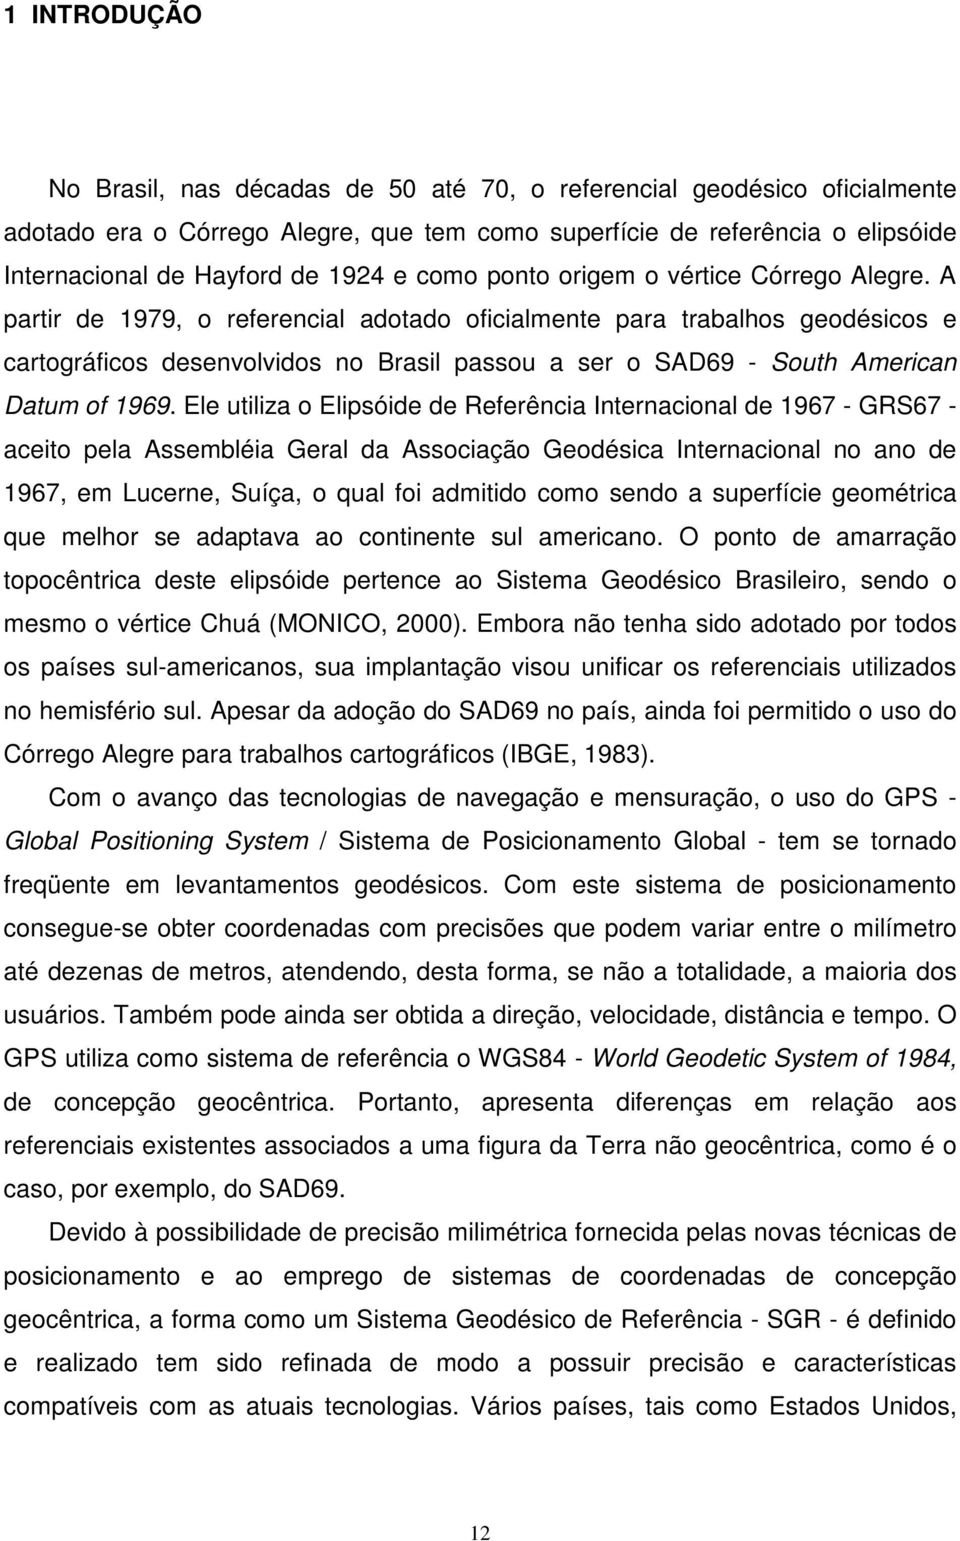 A partir de 1979, o referencial adotado oficialmente para trabalhos geodésicos e cartográficos desenvolvidos no Brasil passou a ser o SAD69 - South American Datum of 1969.